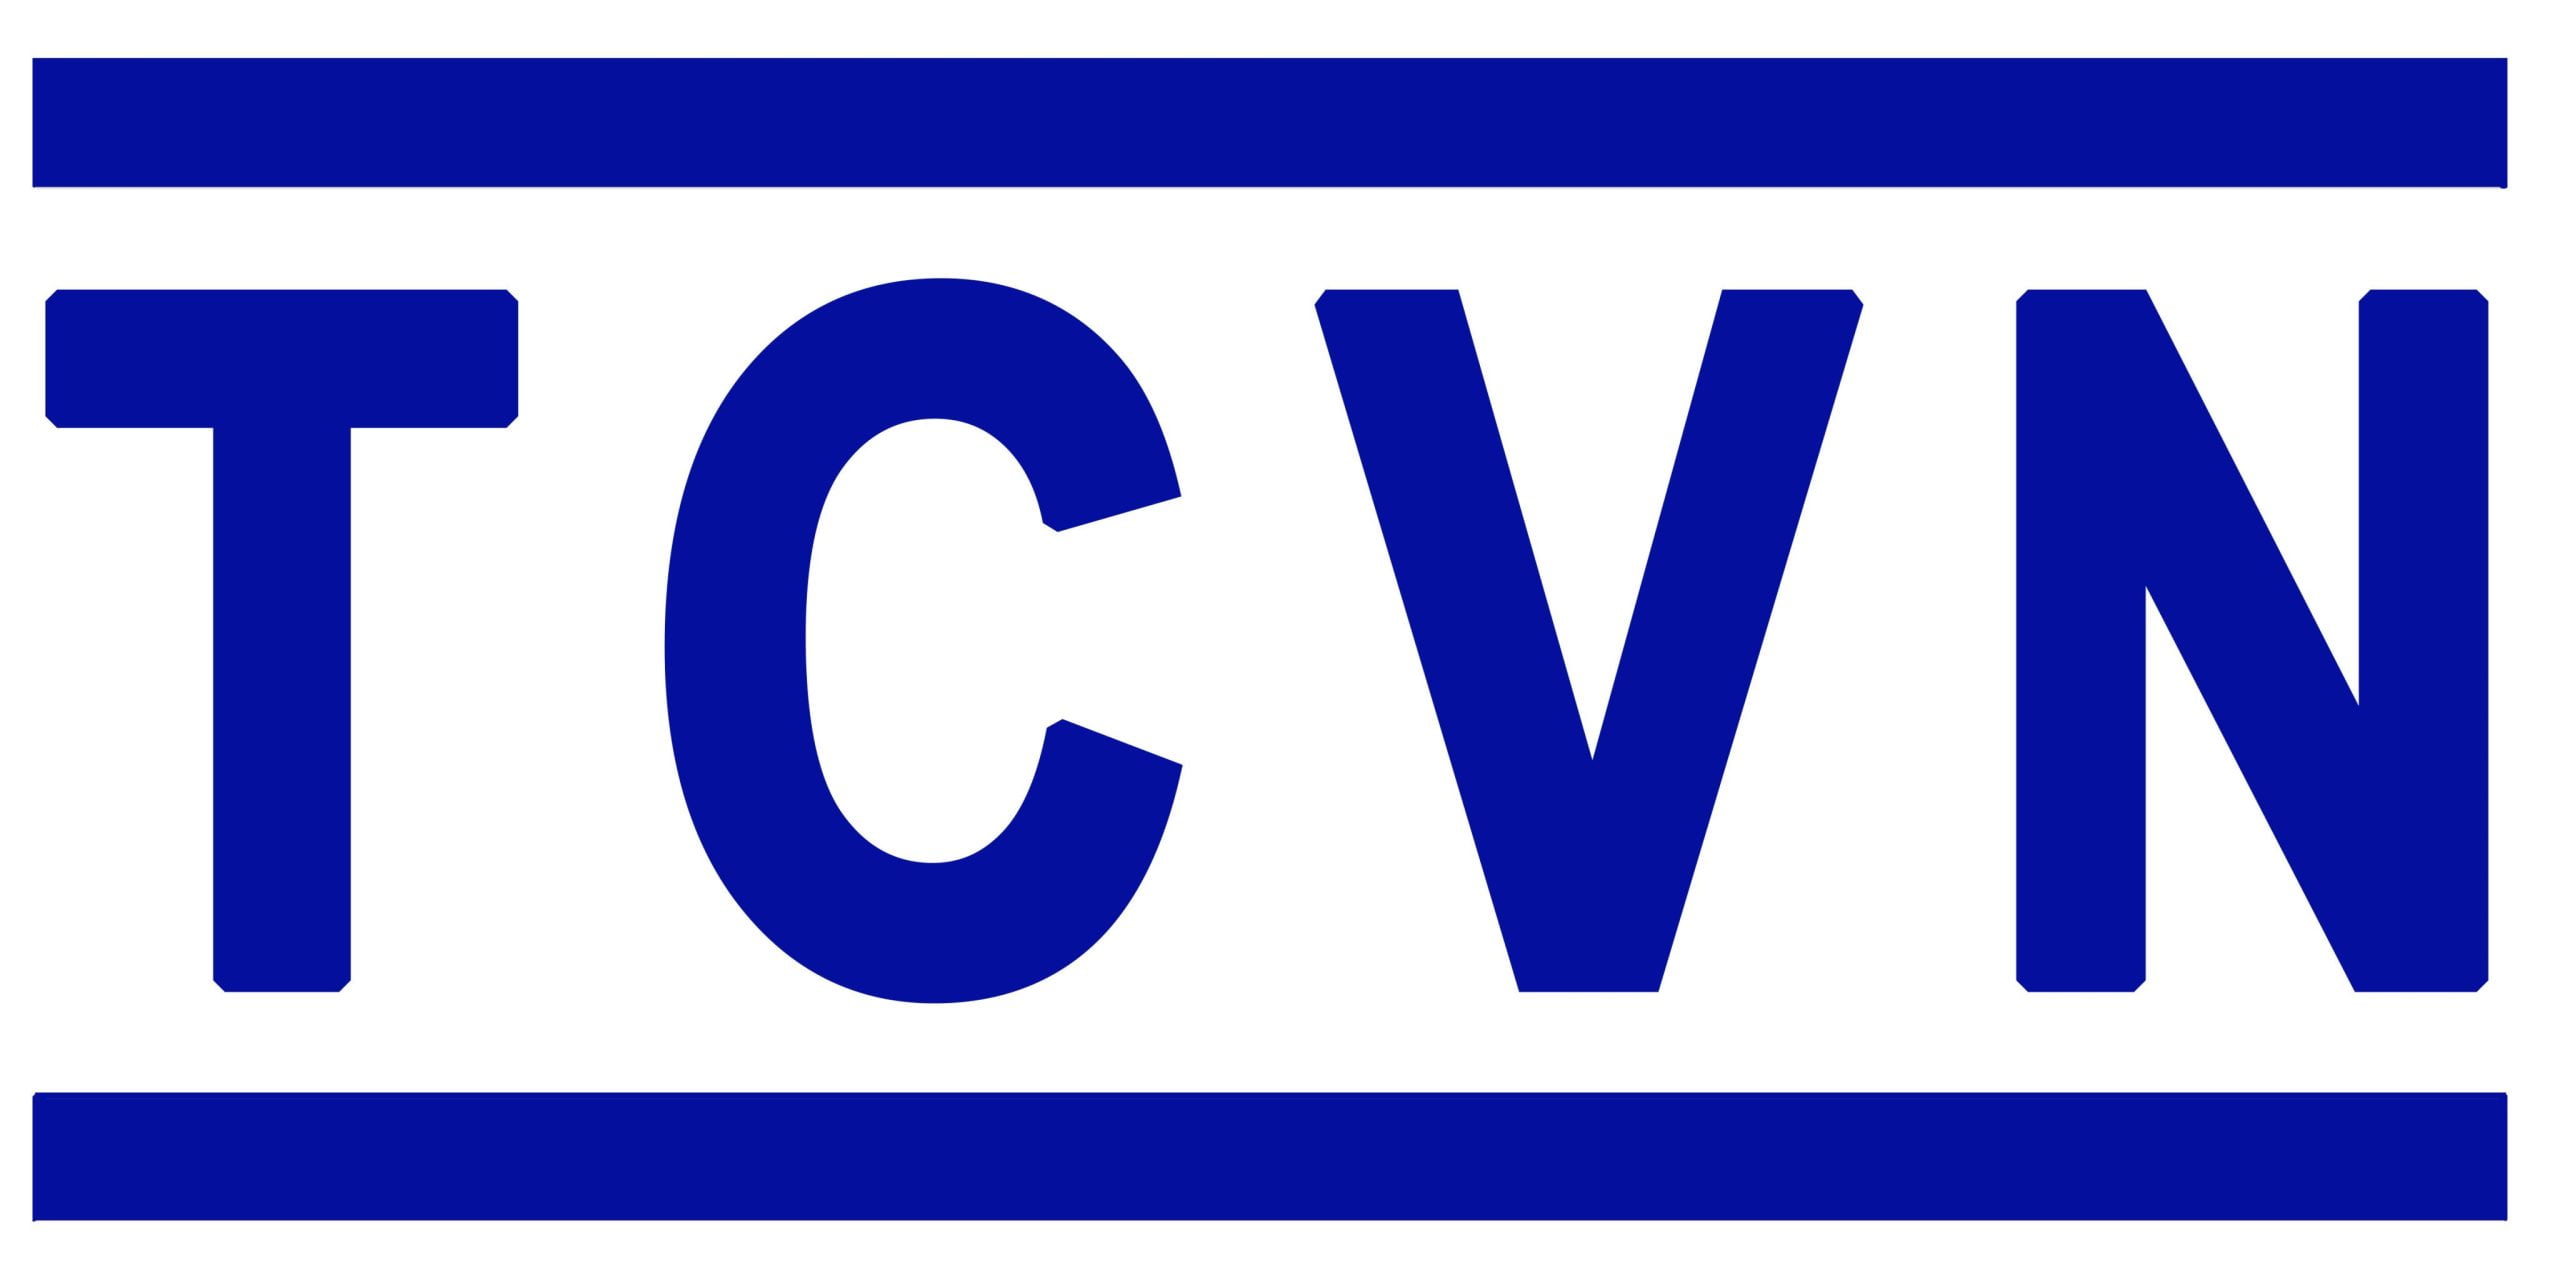 Tiêu chuẩn hợp chuẩn của quốc gia có ký hiệu: TCVN